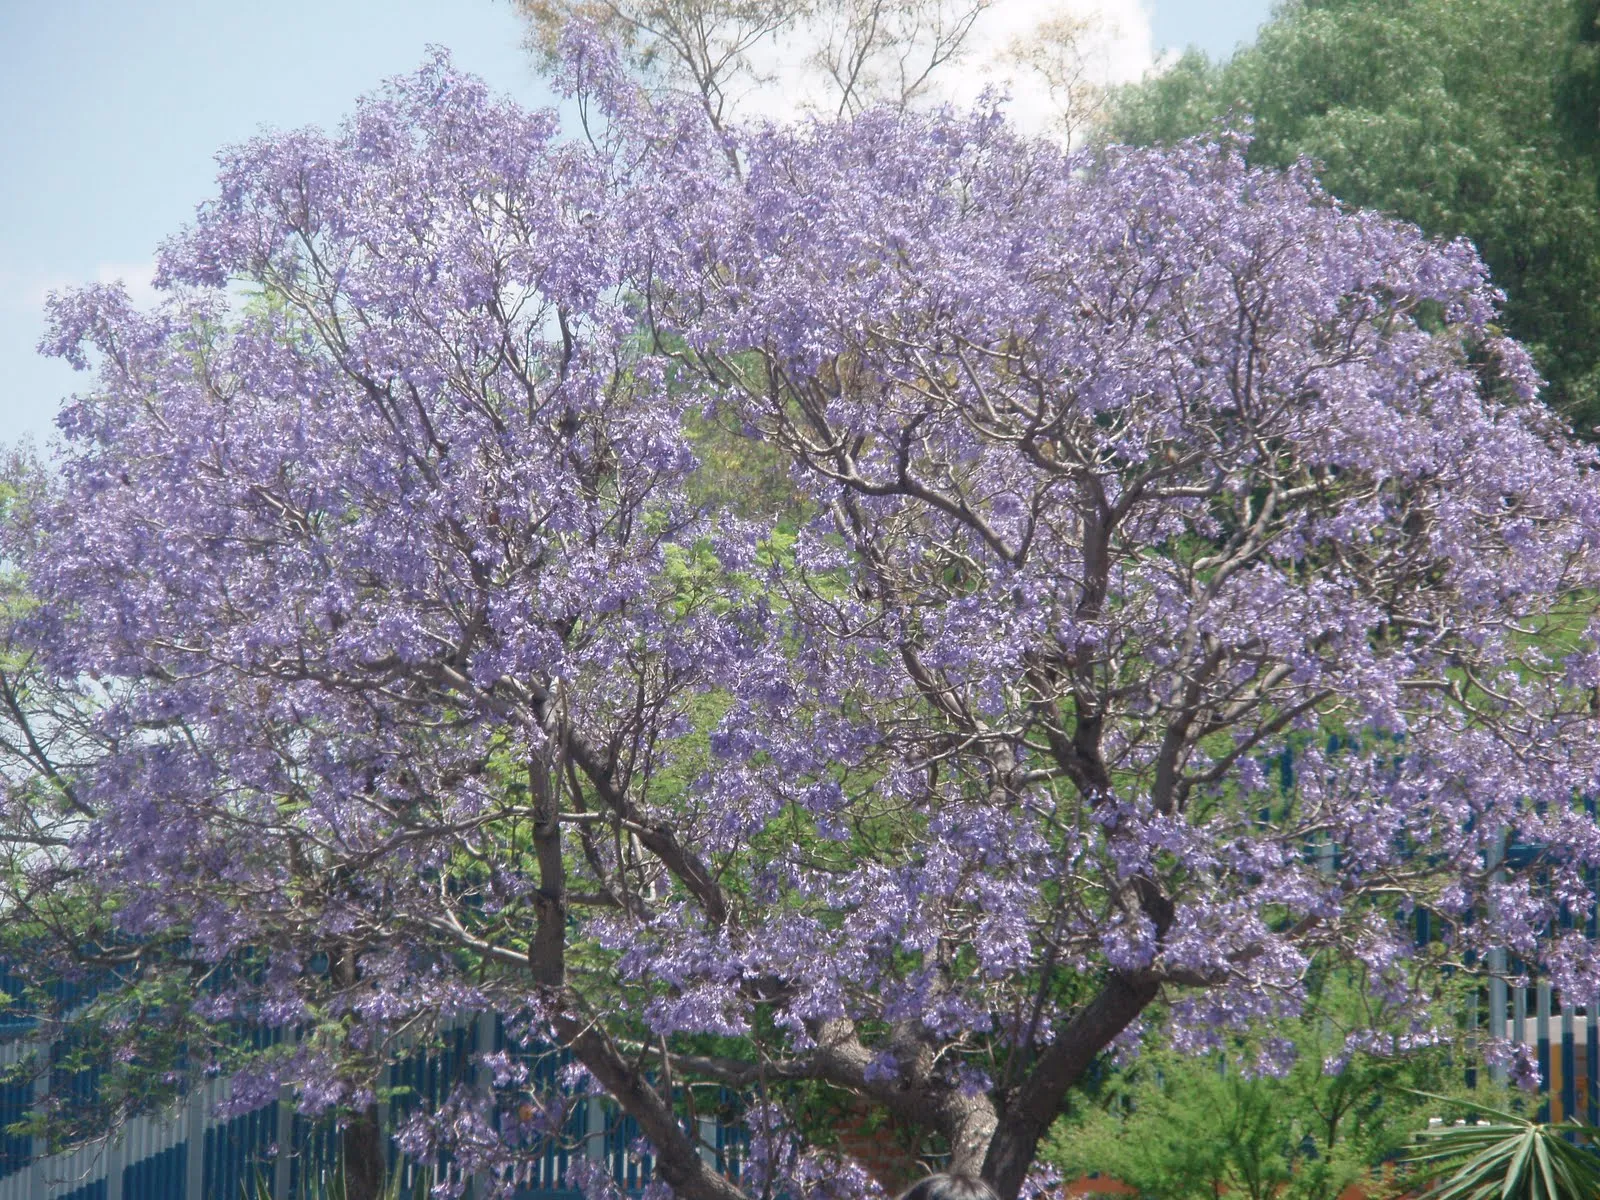  ... foto de los árboles, que tienen flores morados cerca de semana santa